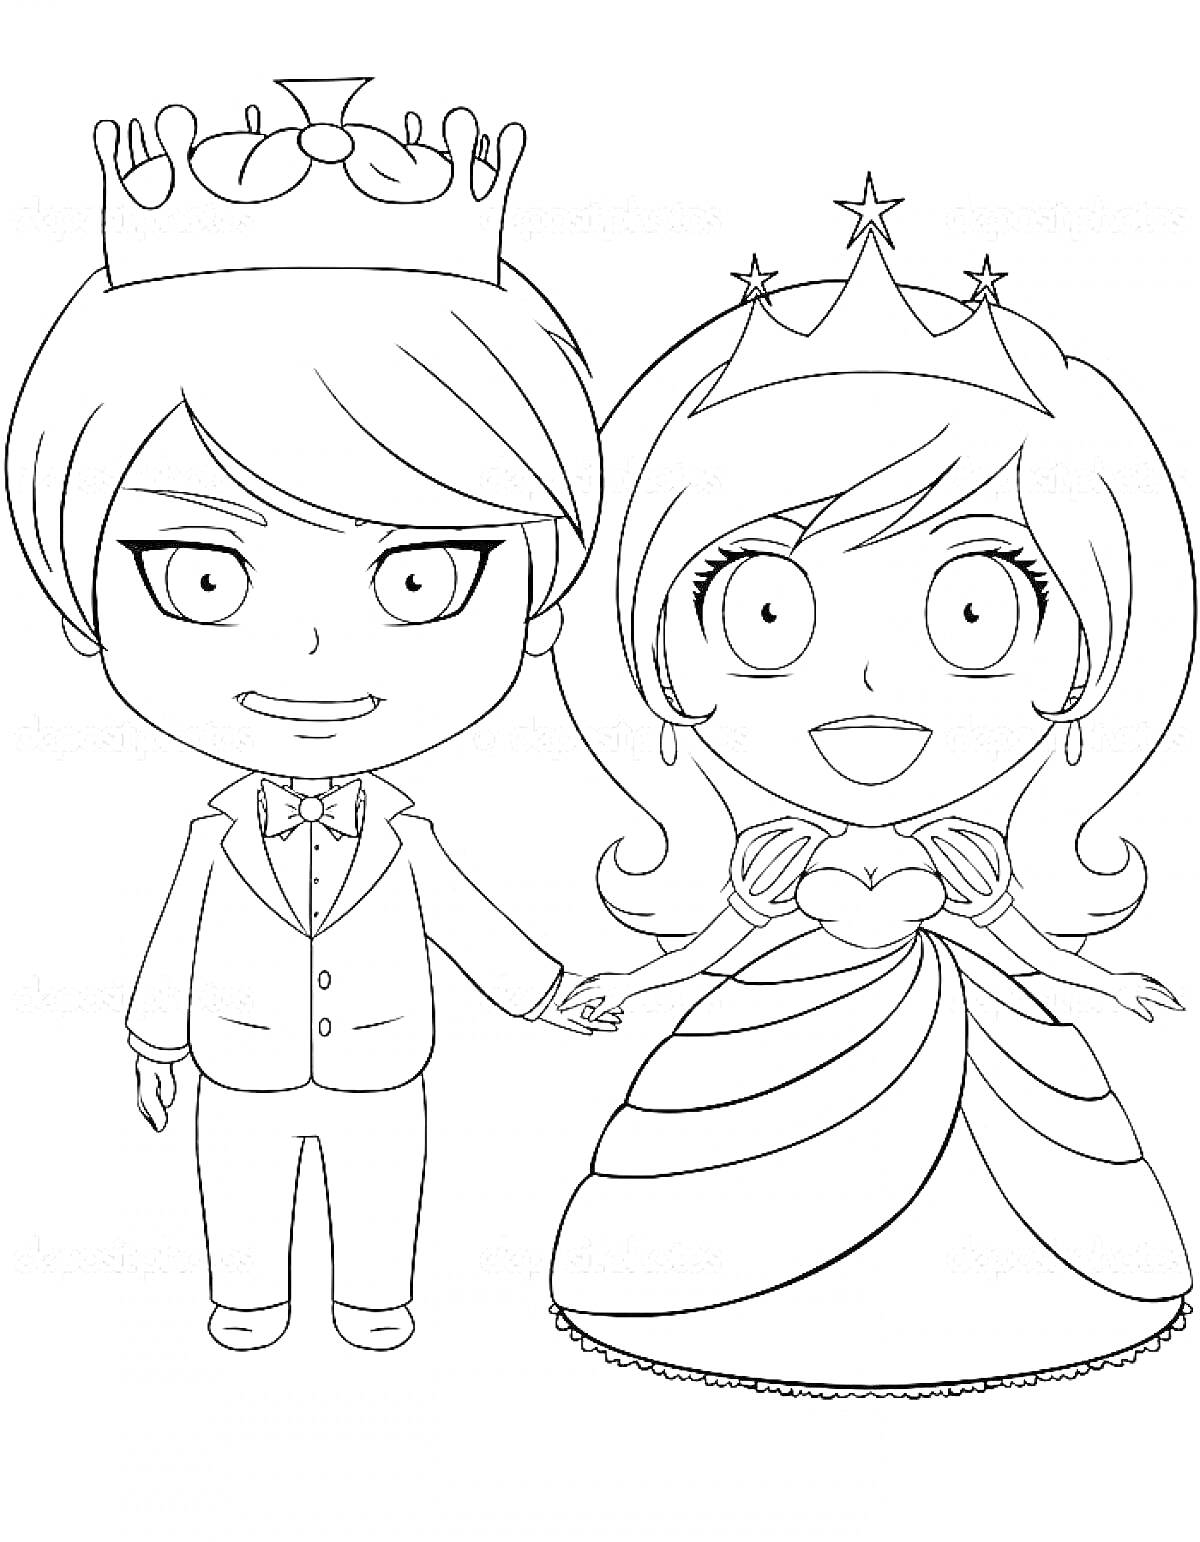 Раскраска Принц и принцесса, держащиеся за руки, в короне и тиаре, принц в костюме, принцесса в платье с рюшами